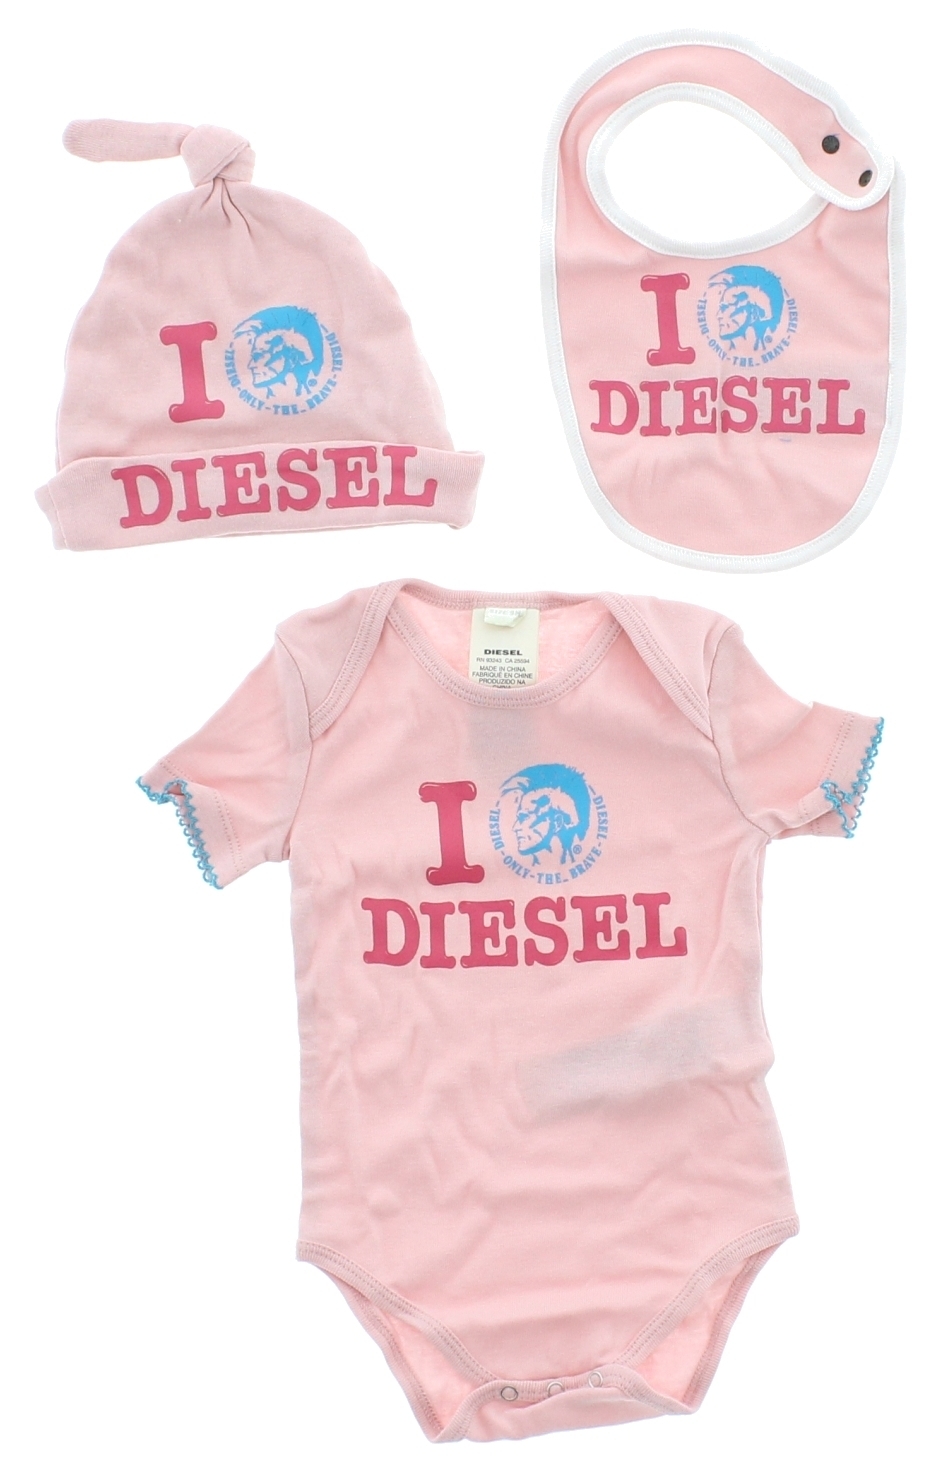 Diesel Szett csecsemőknek 24 hónapos, Rózsaszín fotója